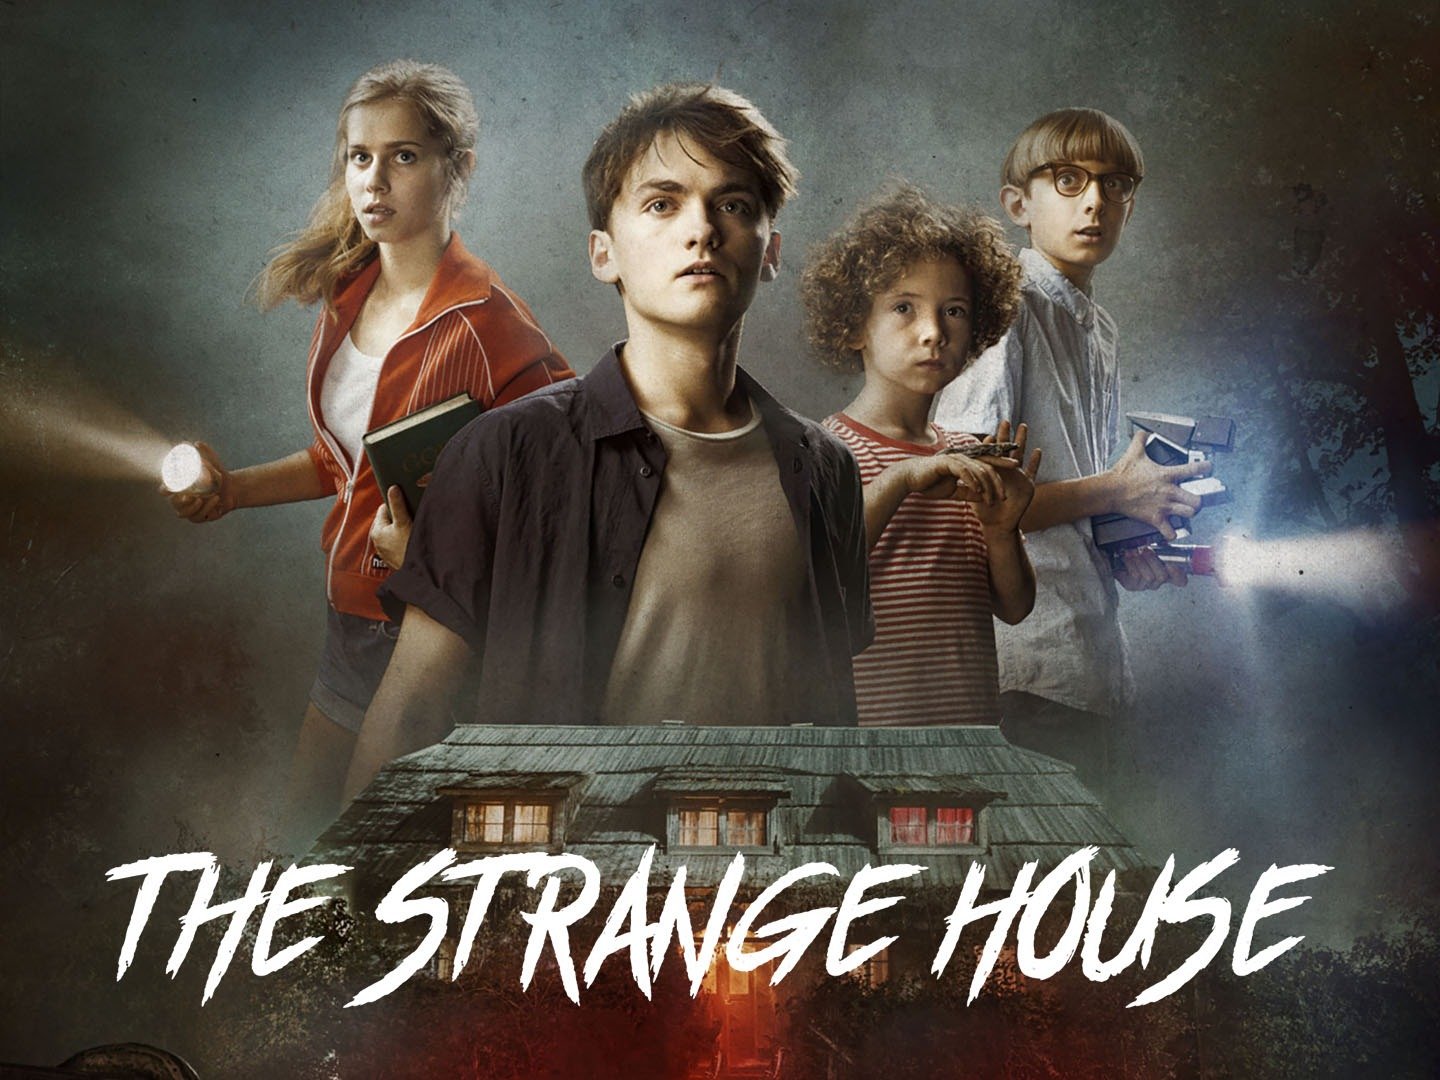 The Strange House ending explained - Who is the Murderer?